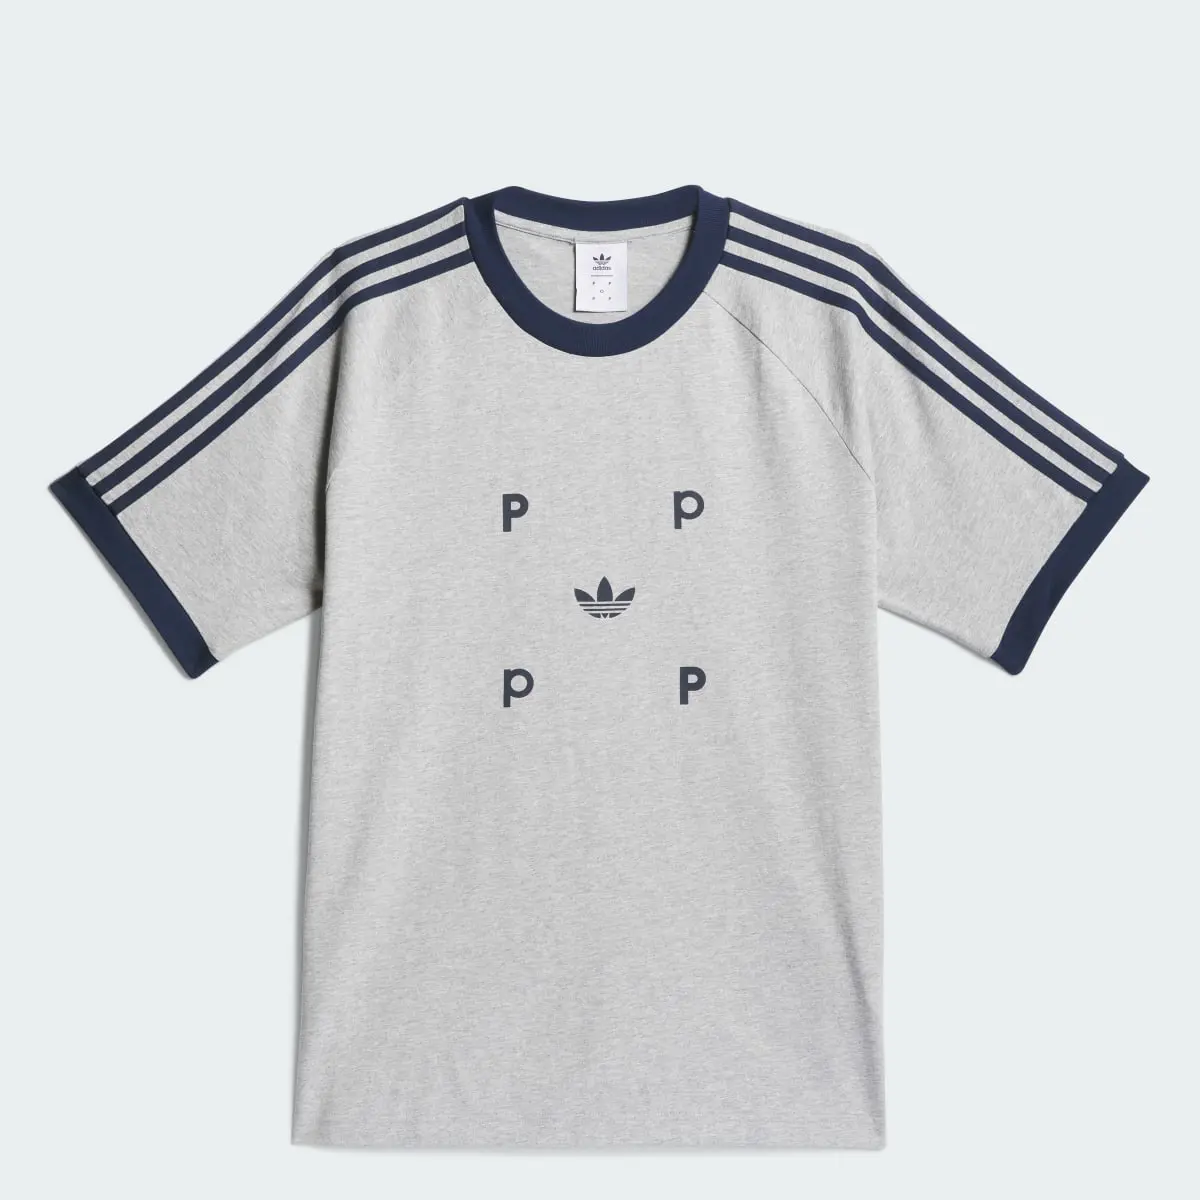 Adidas T-shirt classique Pop. 1